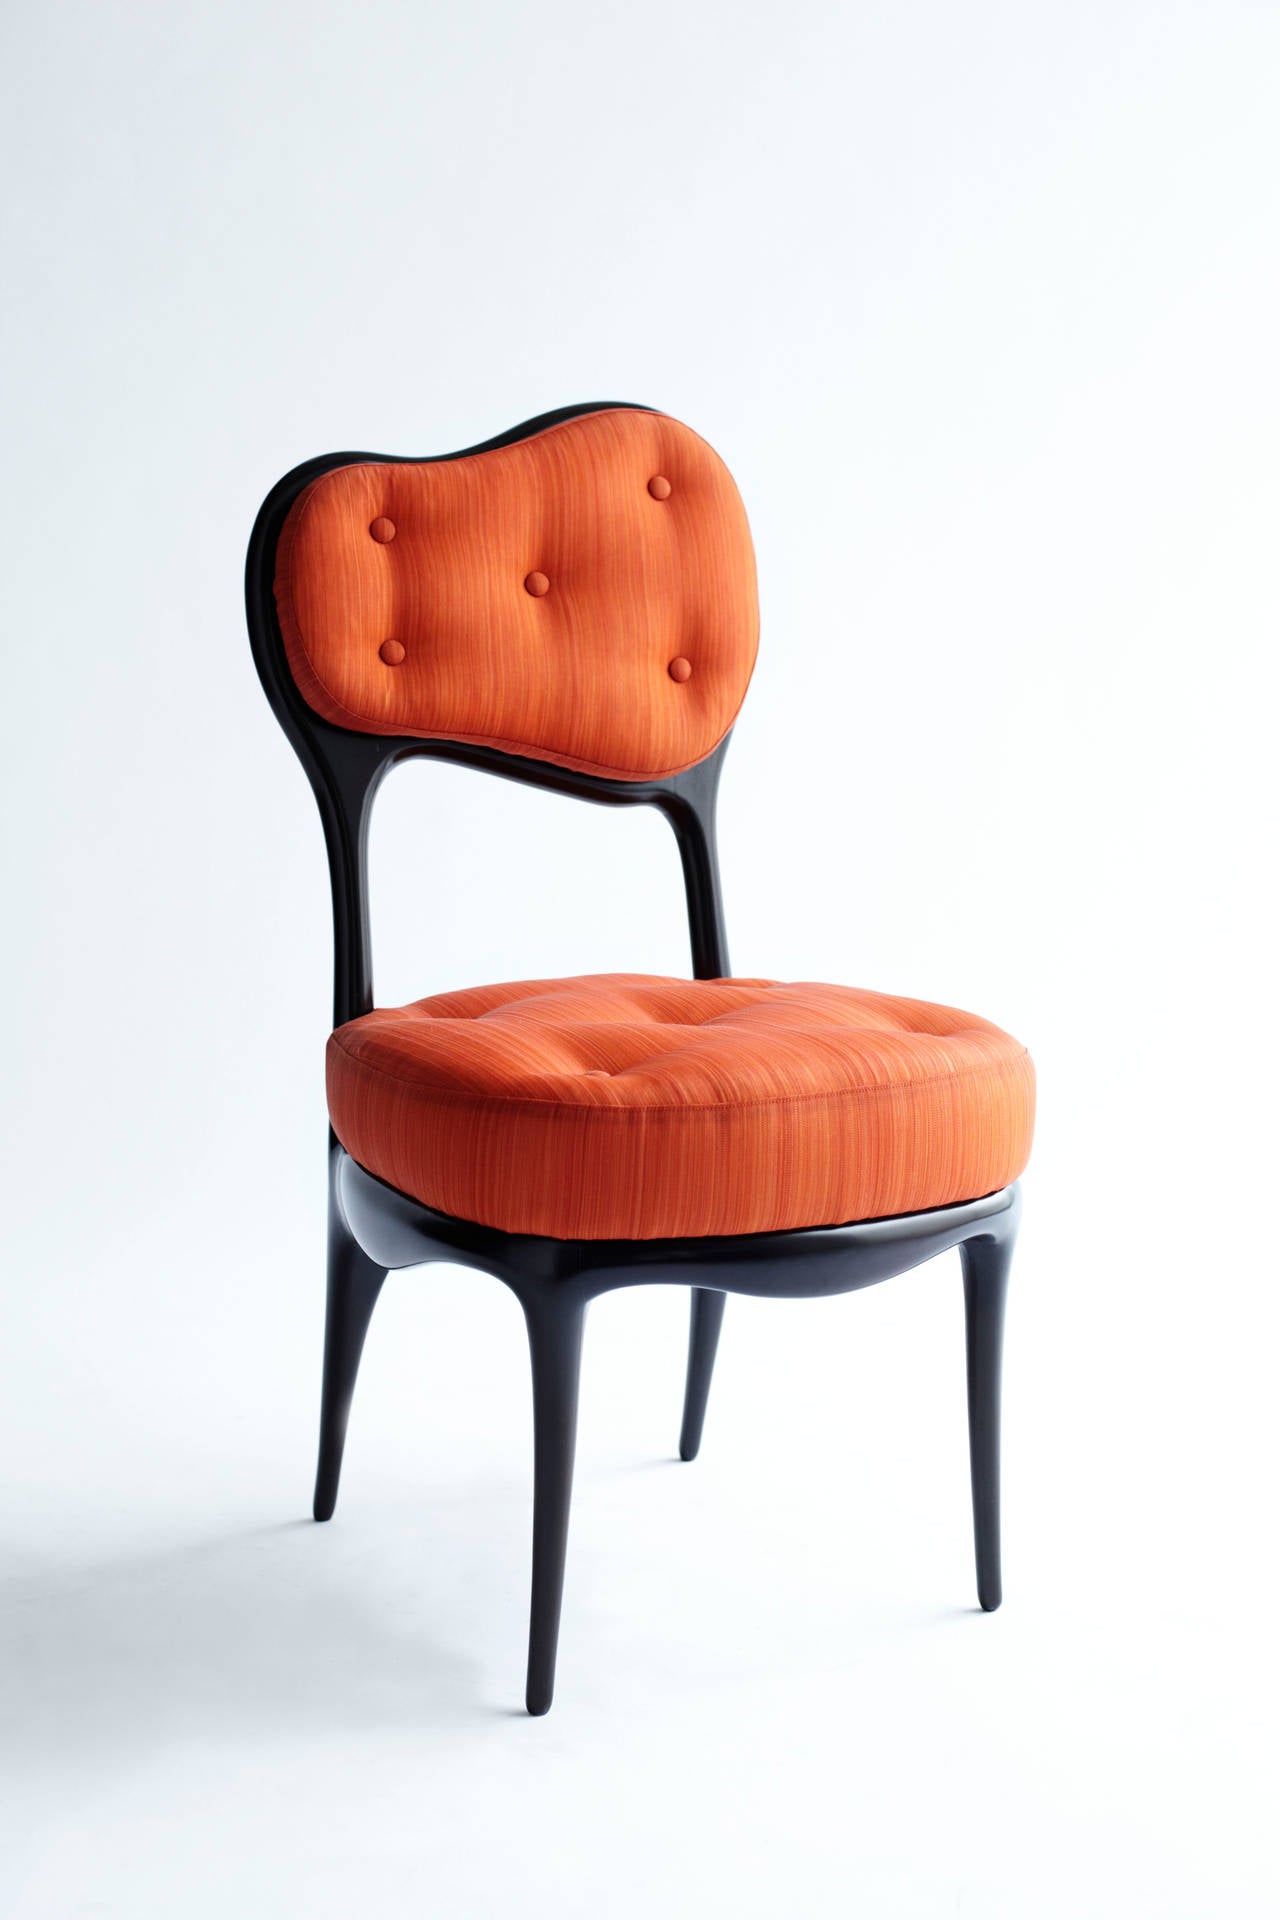 Iris chair - Sculpture by Mattia Bonetti